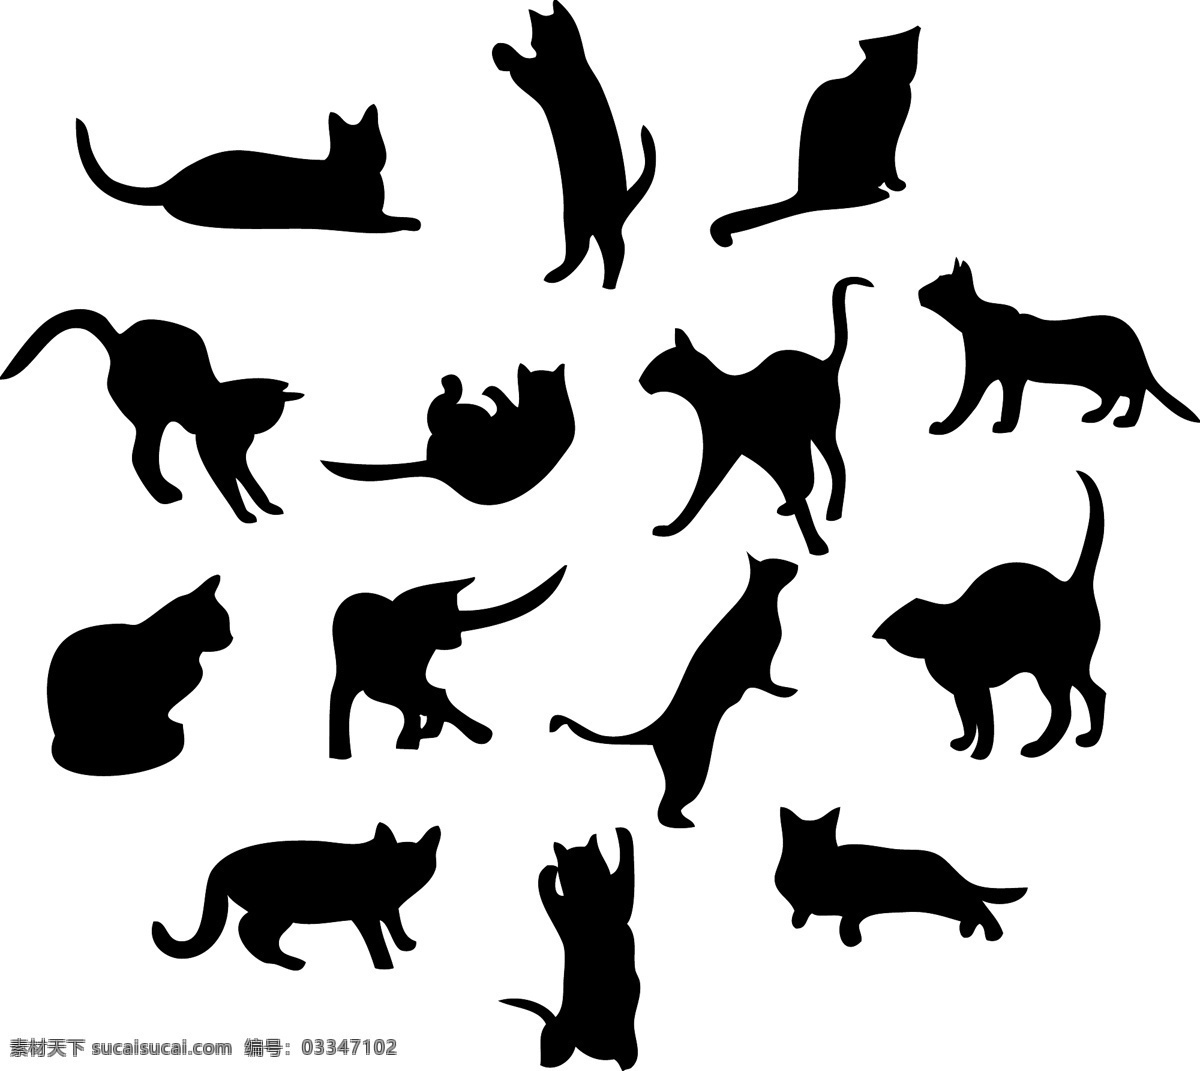 黑貓剪影矢量 黑貓 動物 剪影 家貓 寵物 生物世界 野生动物